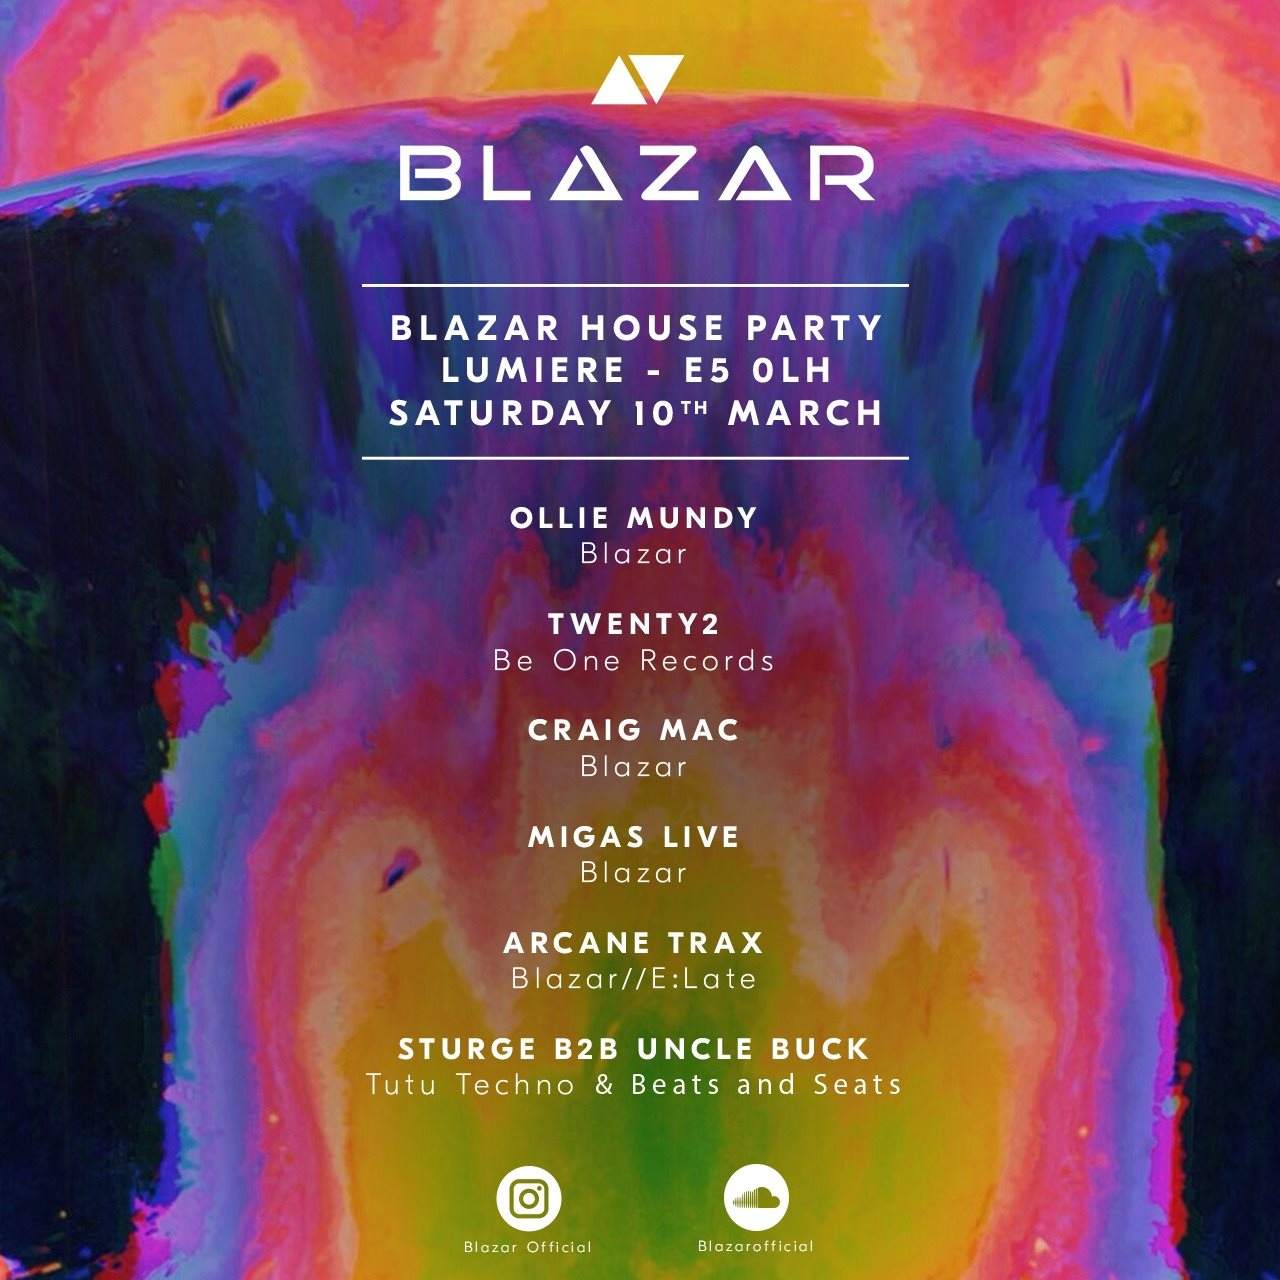 Blazar House Party - フライヤー裏